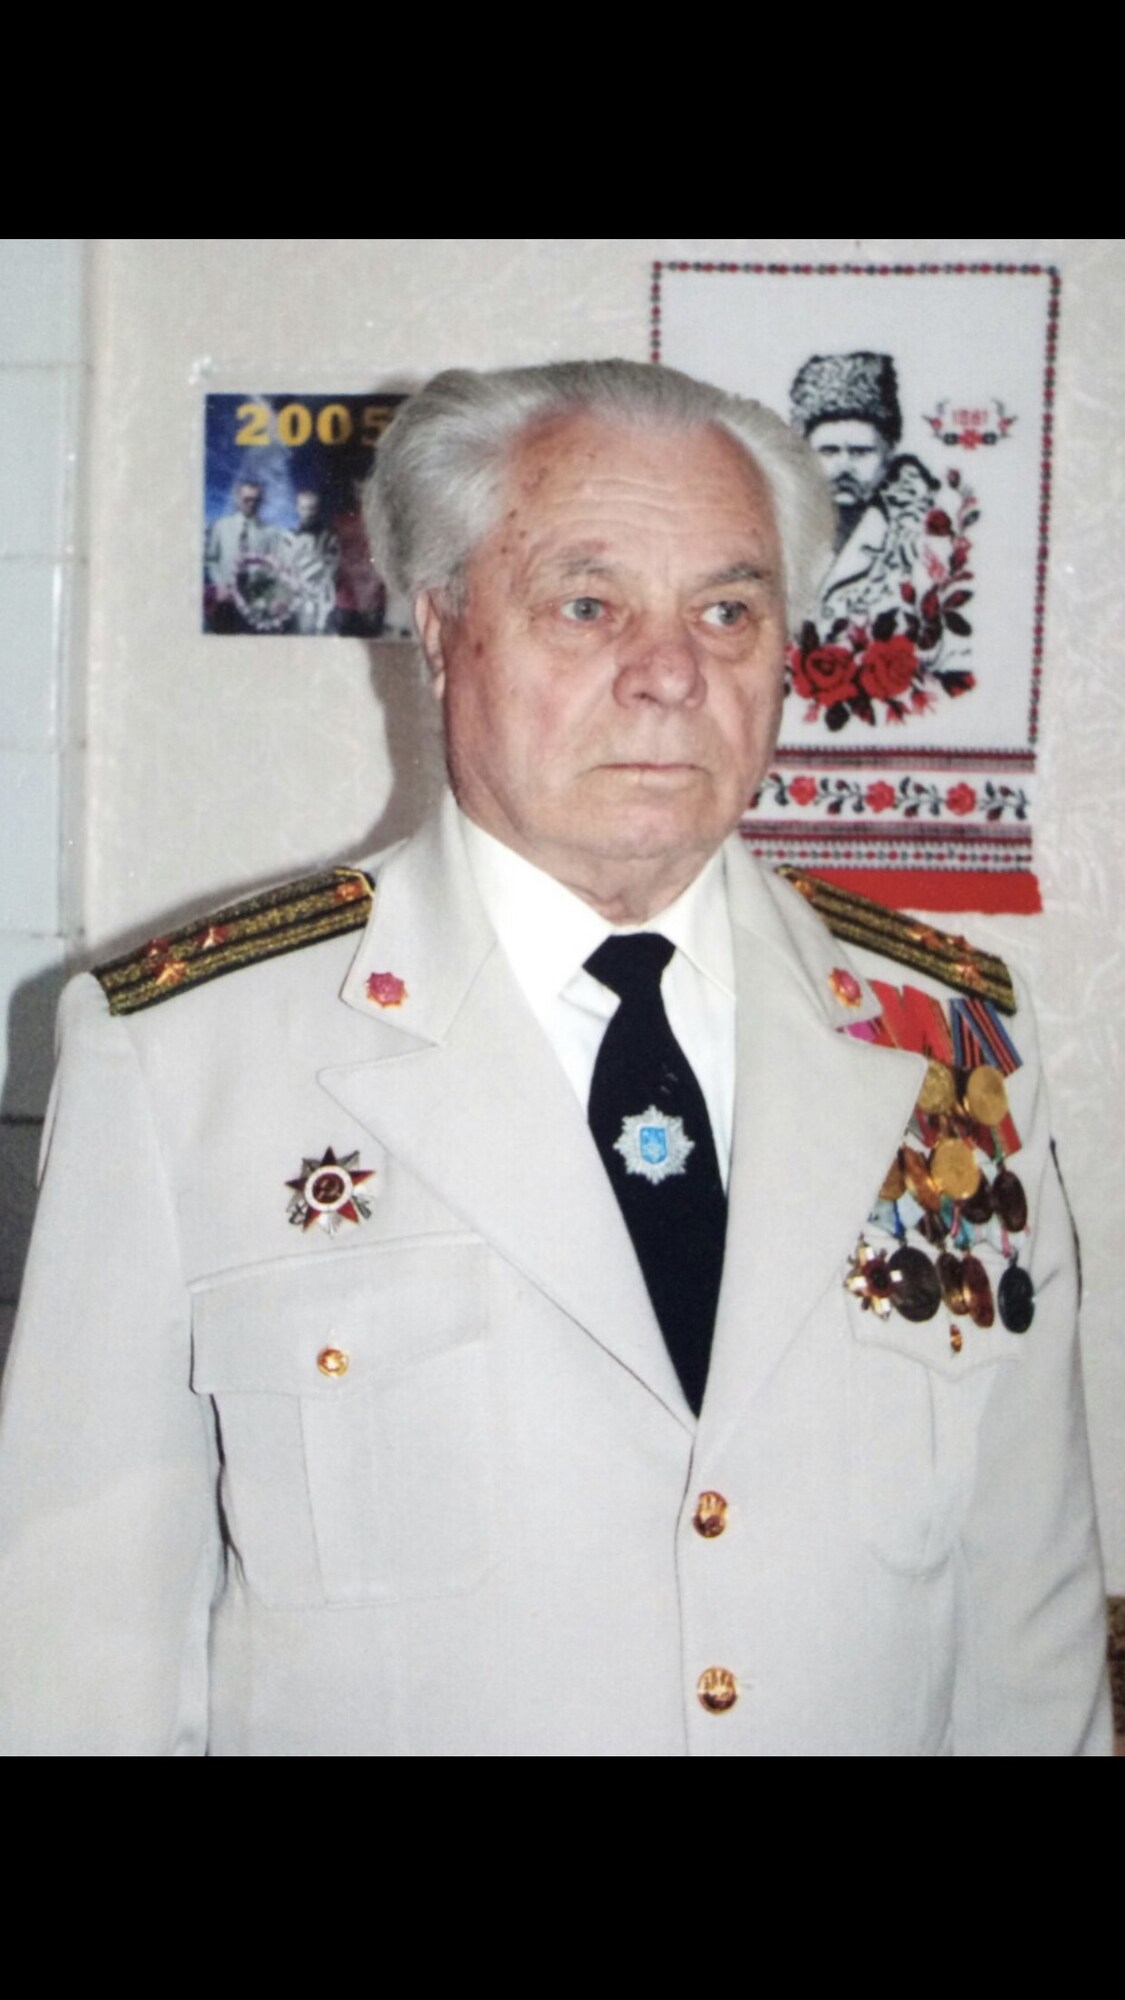 Василь Хільченко війну закінчив сержантом, потім отримав лейтенанта. А при при президенті Ющенко всім ветеранам присвоїли звання полковника.